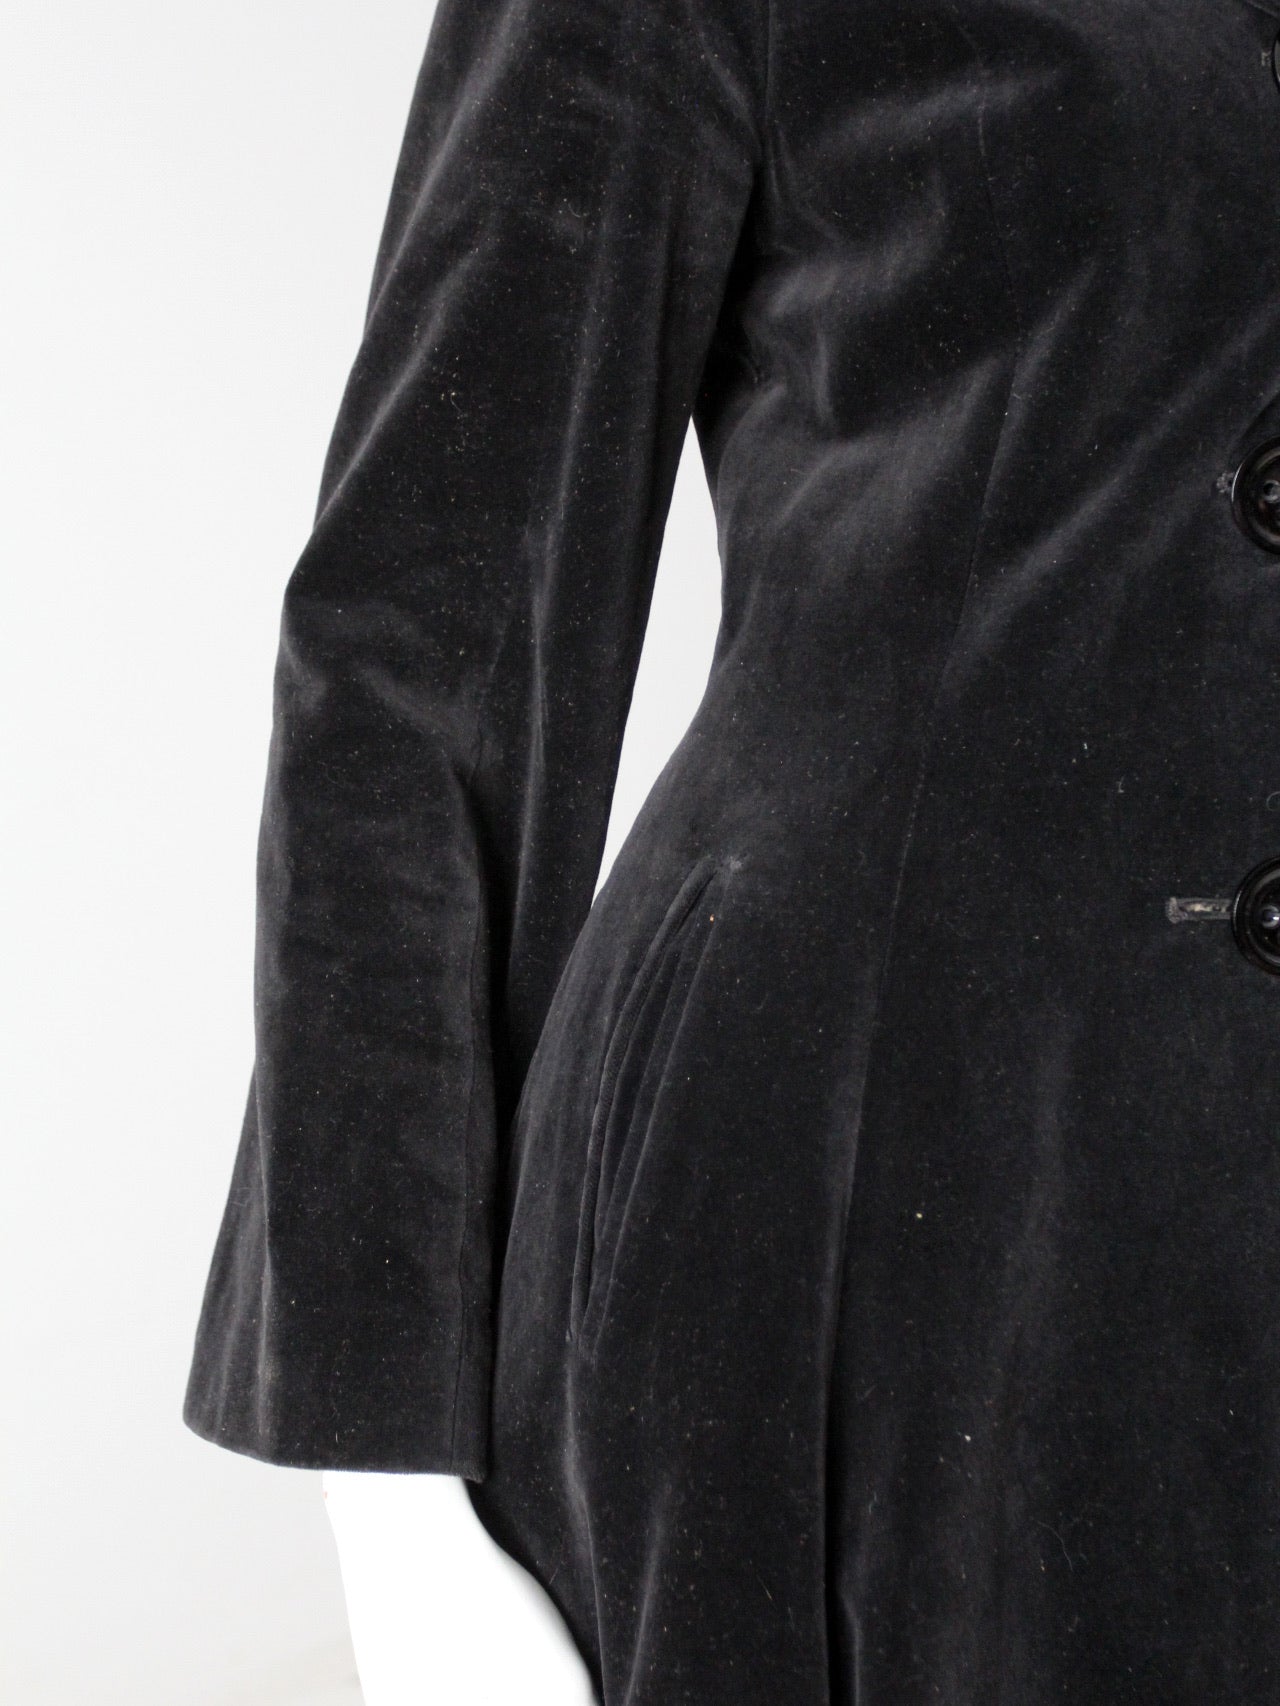 vintage 60s Stirling Cooper velvet overcoat